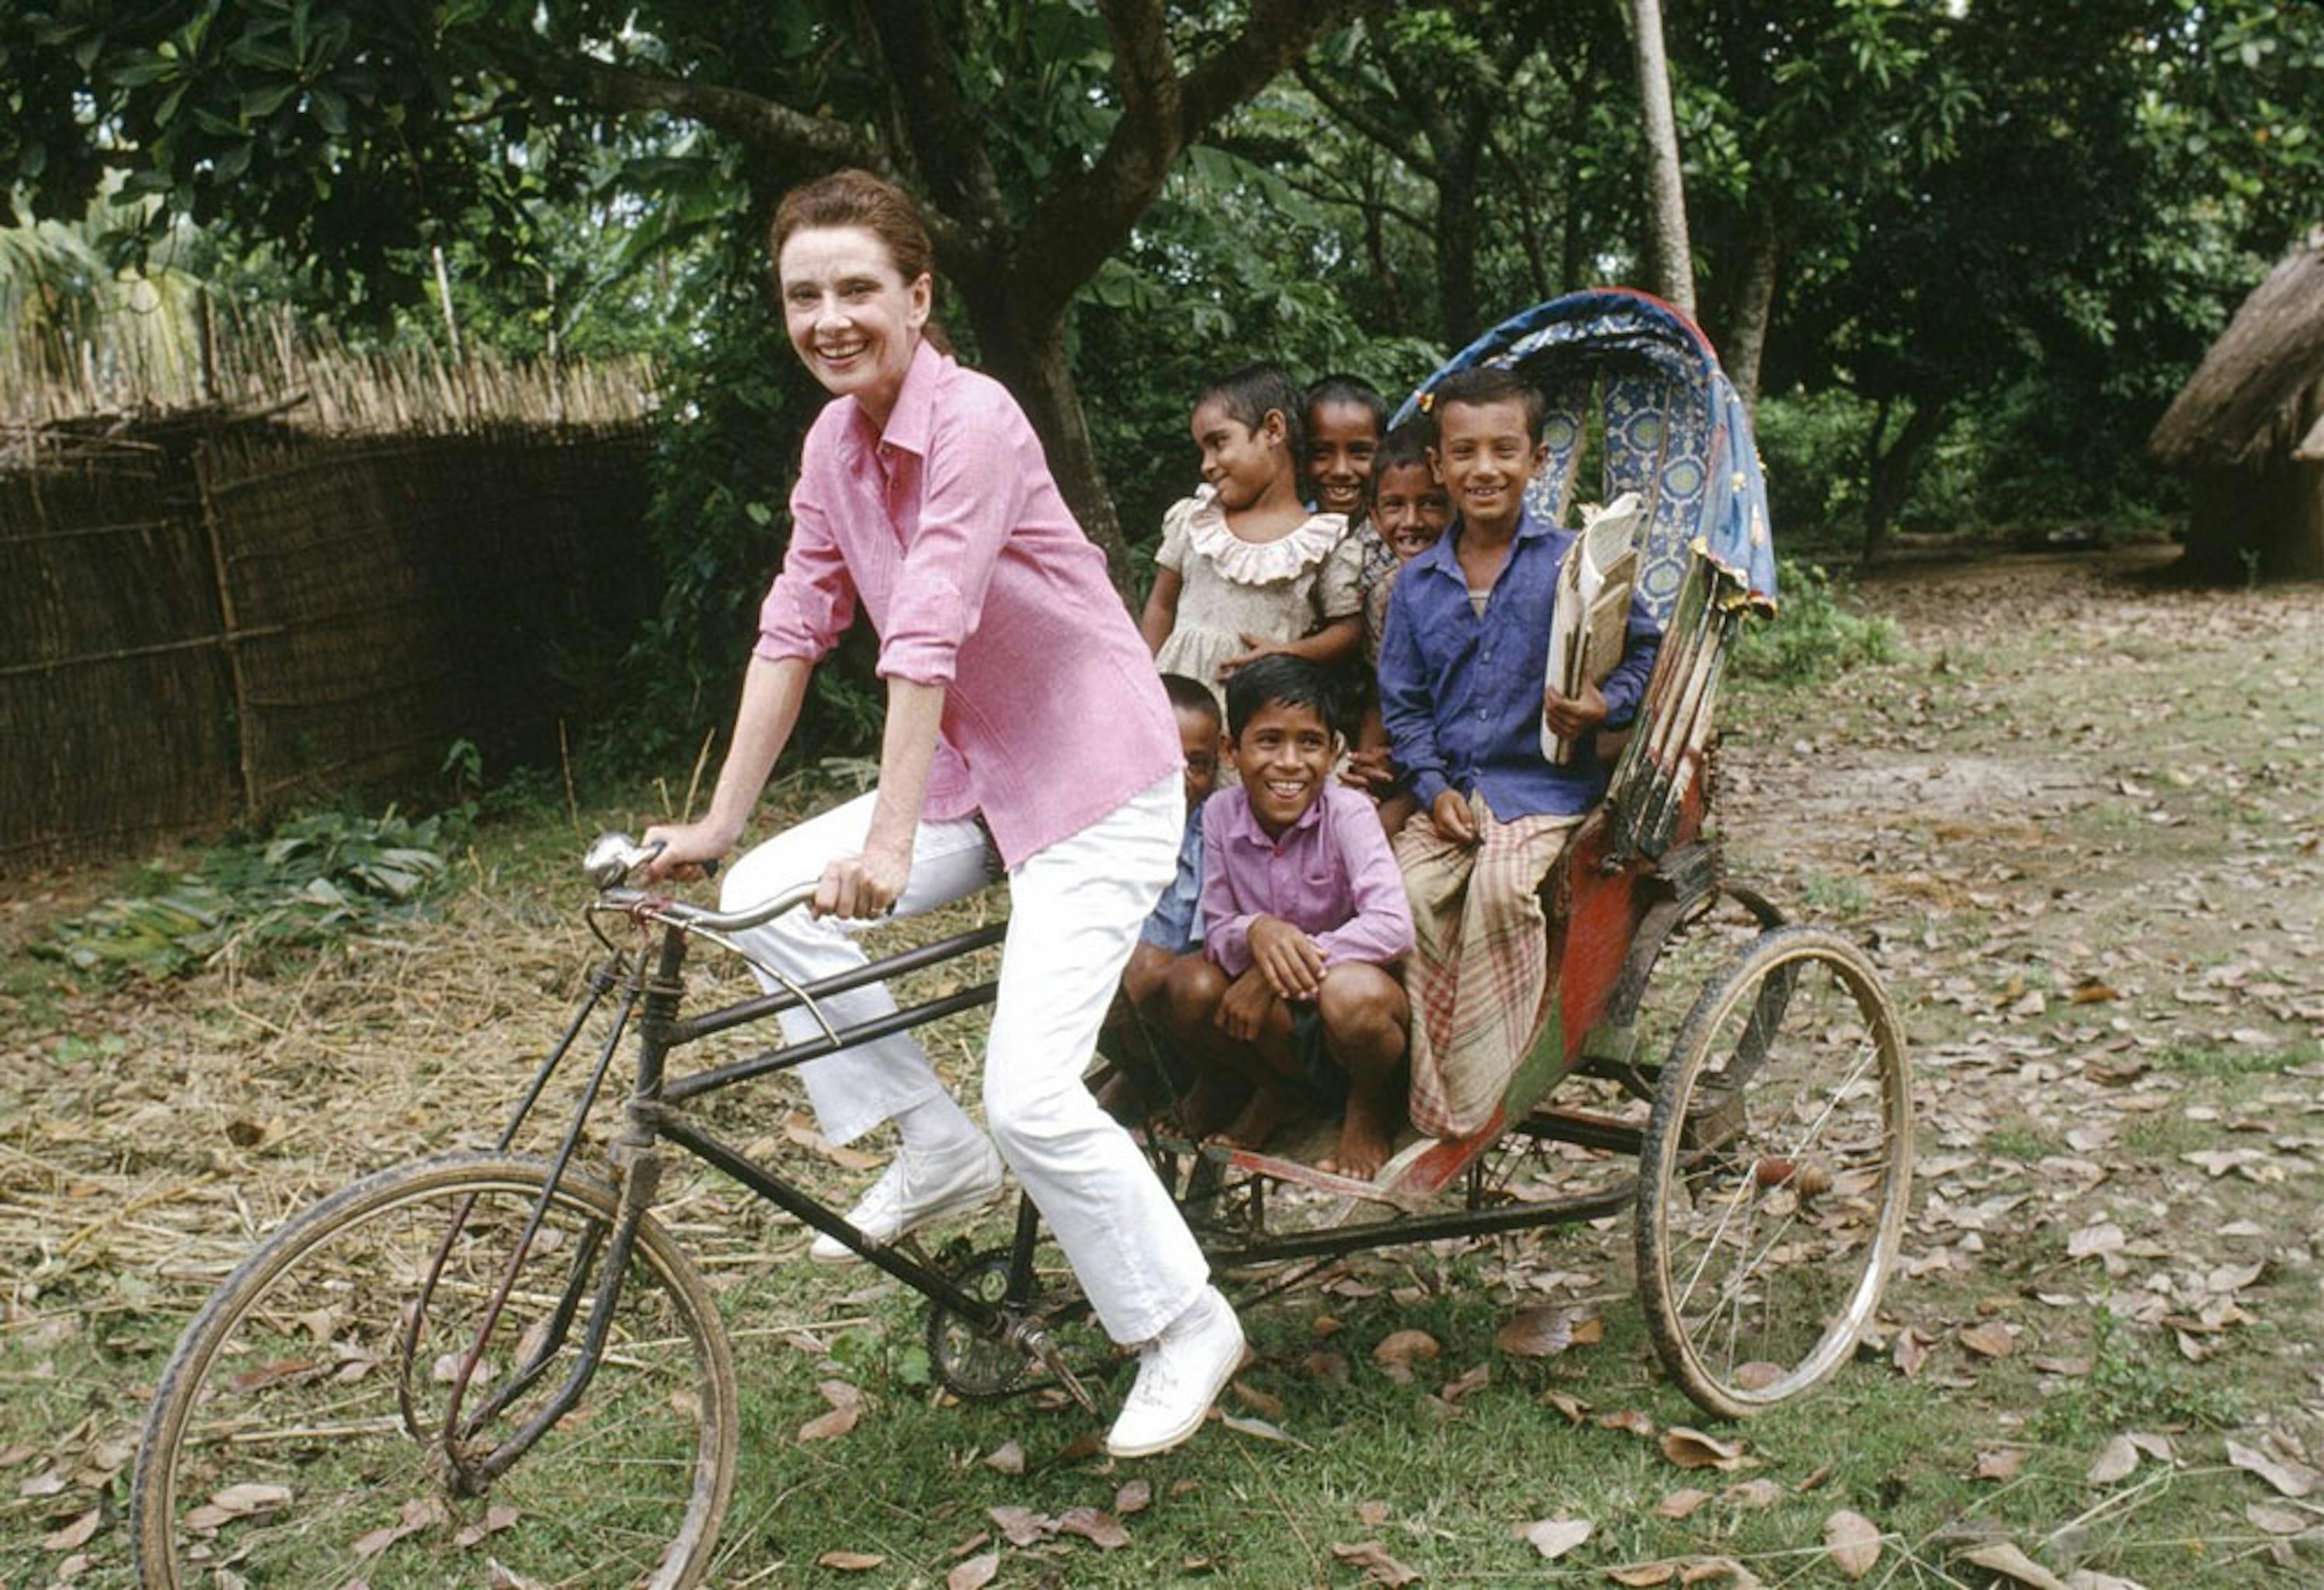 Un'allegra immagine di Audrey Hepburn durante la sua missione in Bangladesh dell'ottobre 1989 - ©UNICEF/UNI40131/Isaac